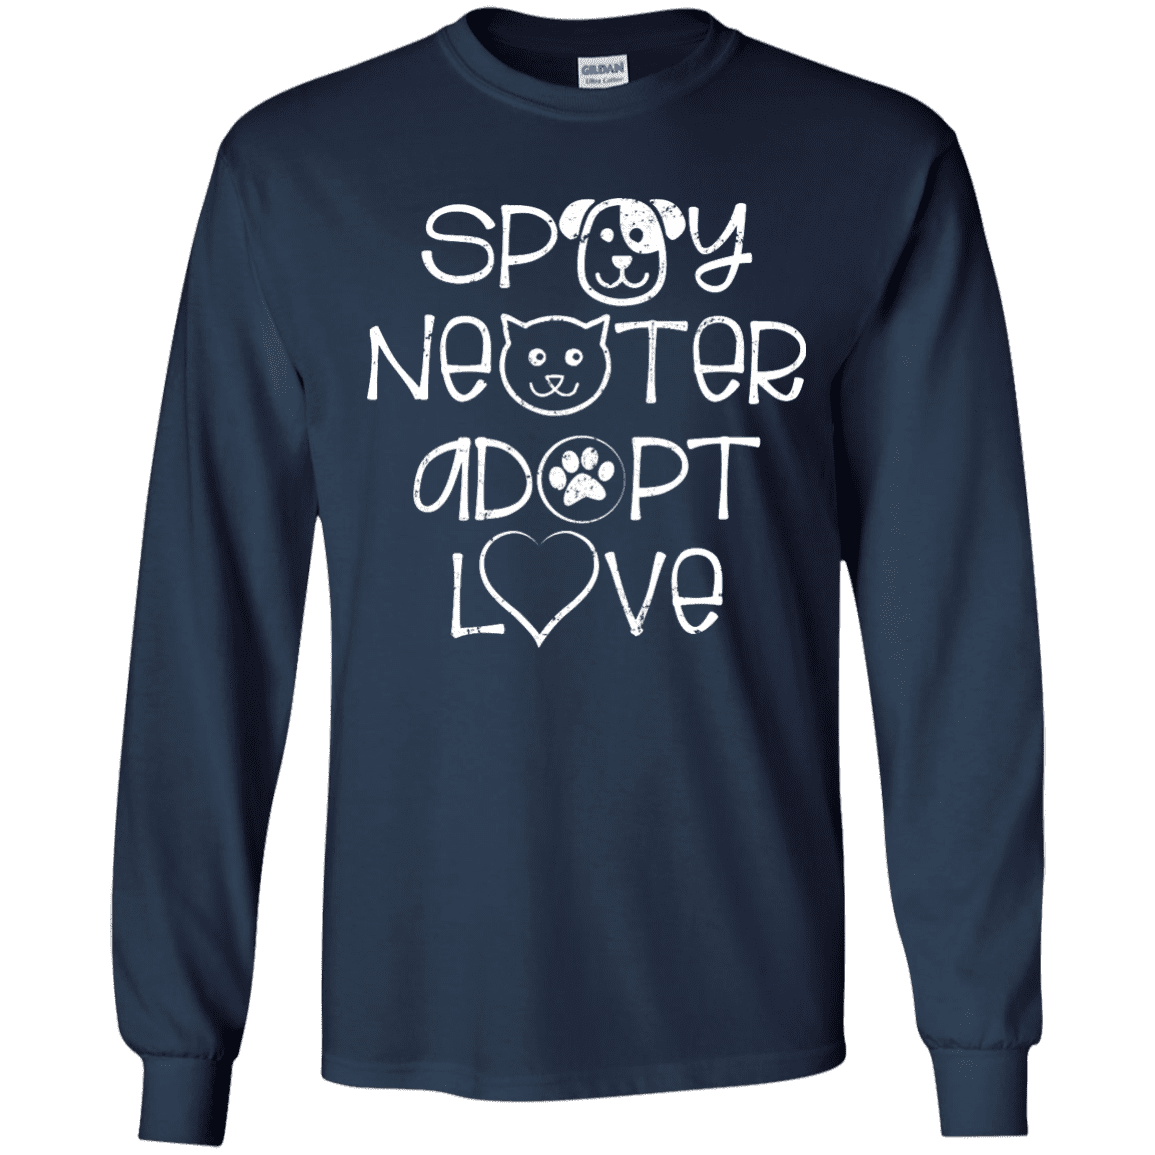 Spay Neuter Adopt Love - Long Sleeve T Shirt.